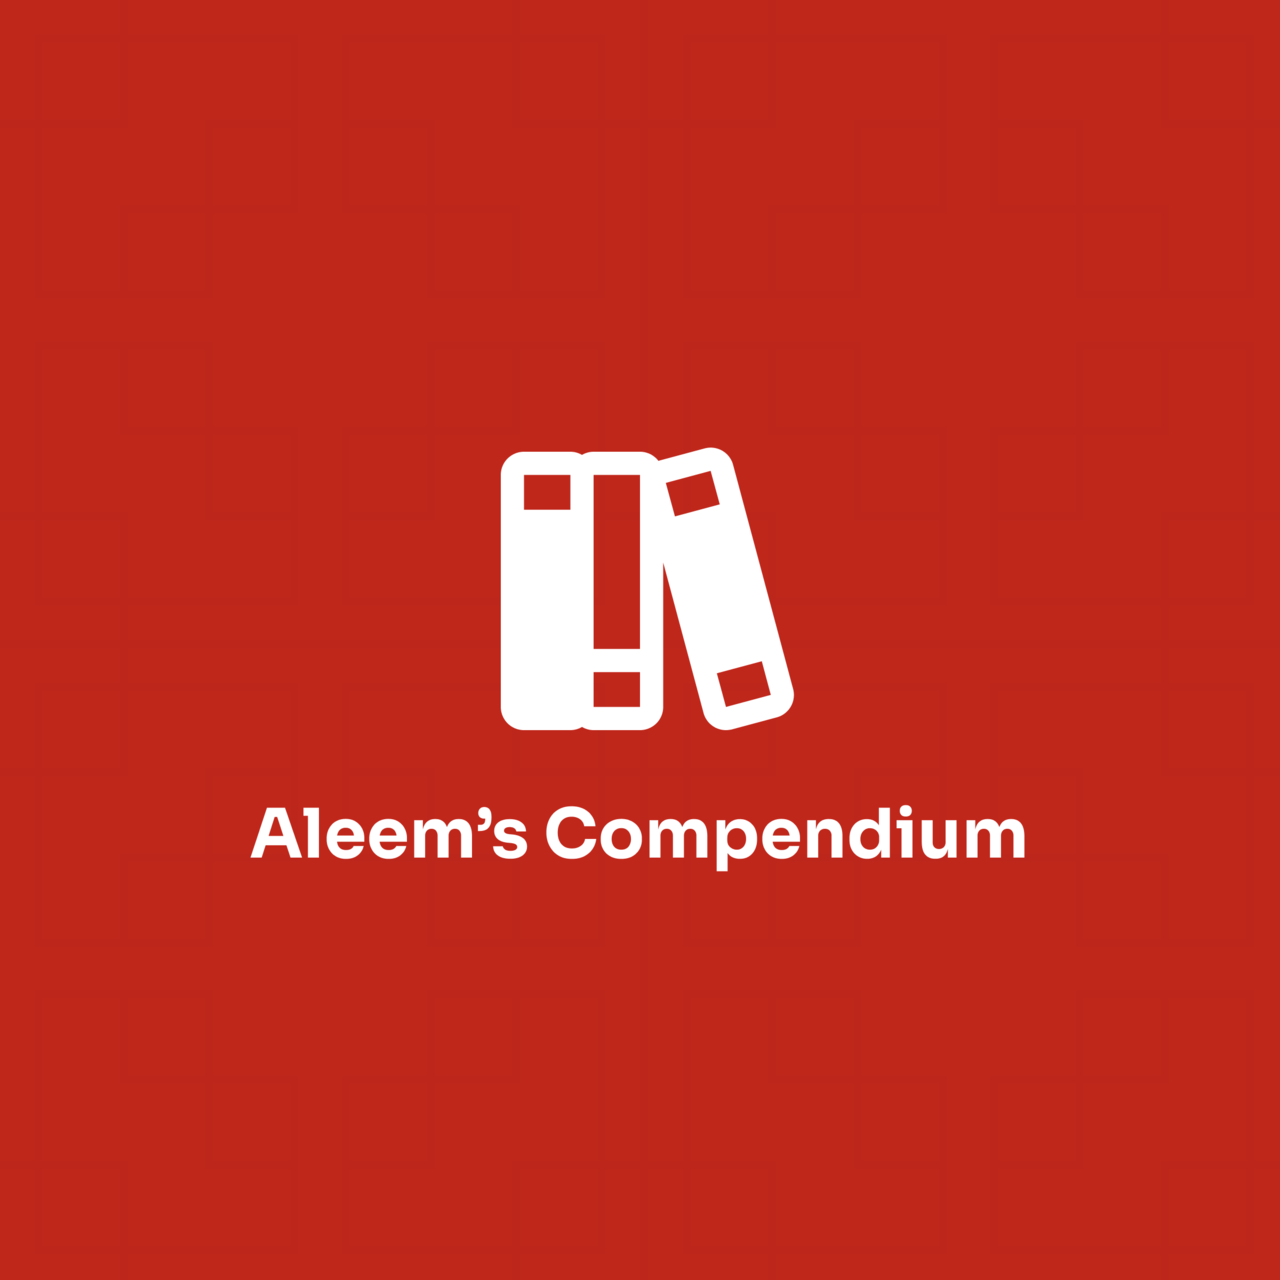 Aleem’s Compendium